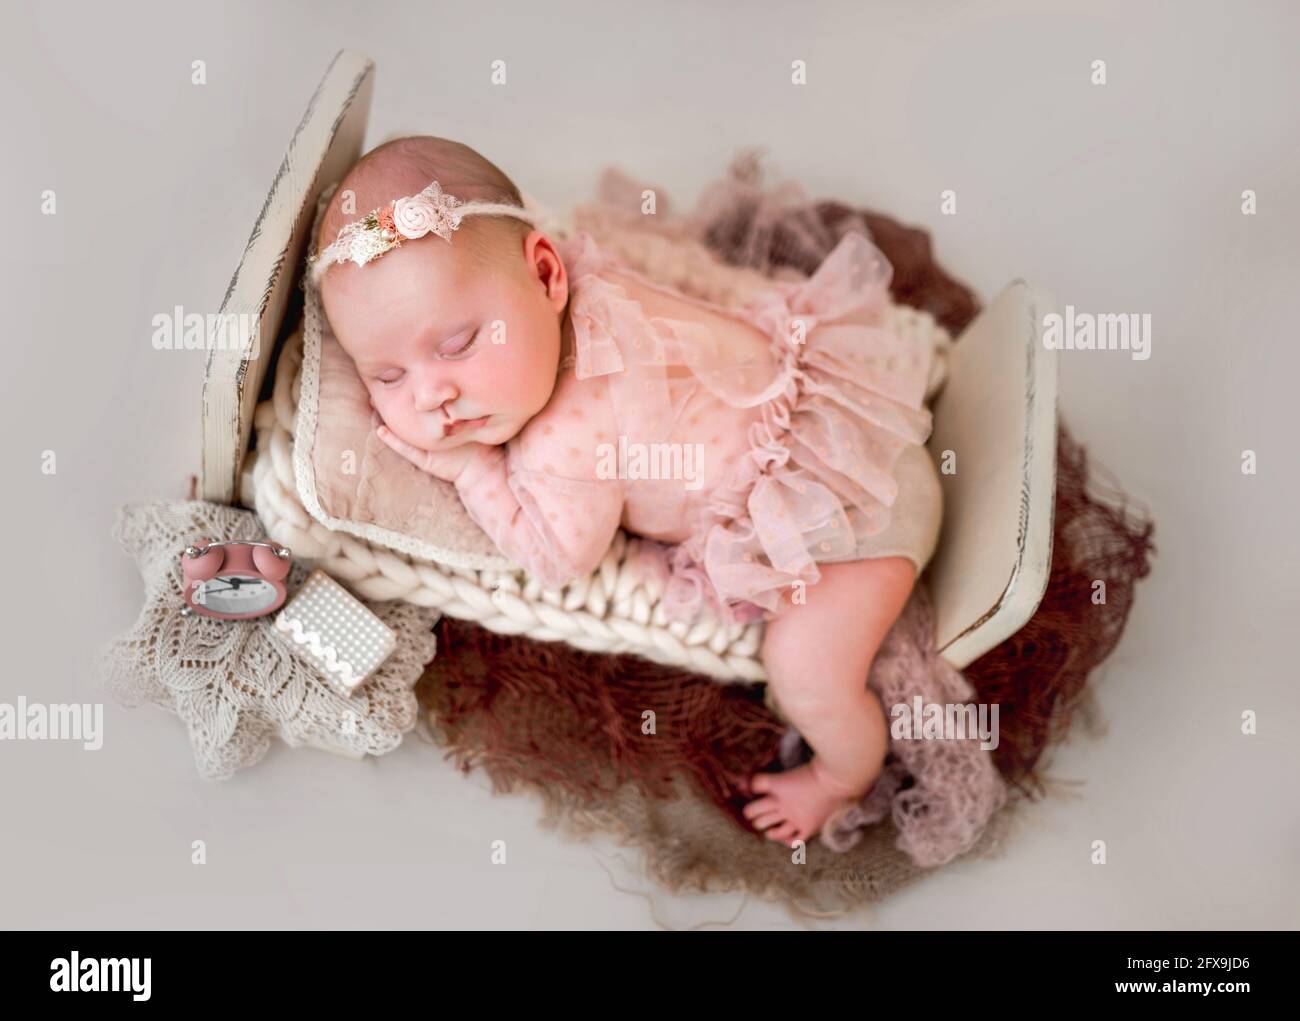 Bebé recién nacido niña fotohoot Fotografía de stock - Alamy